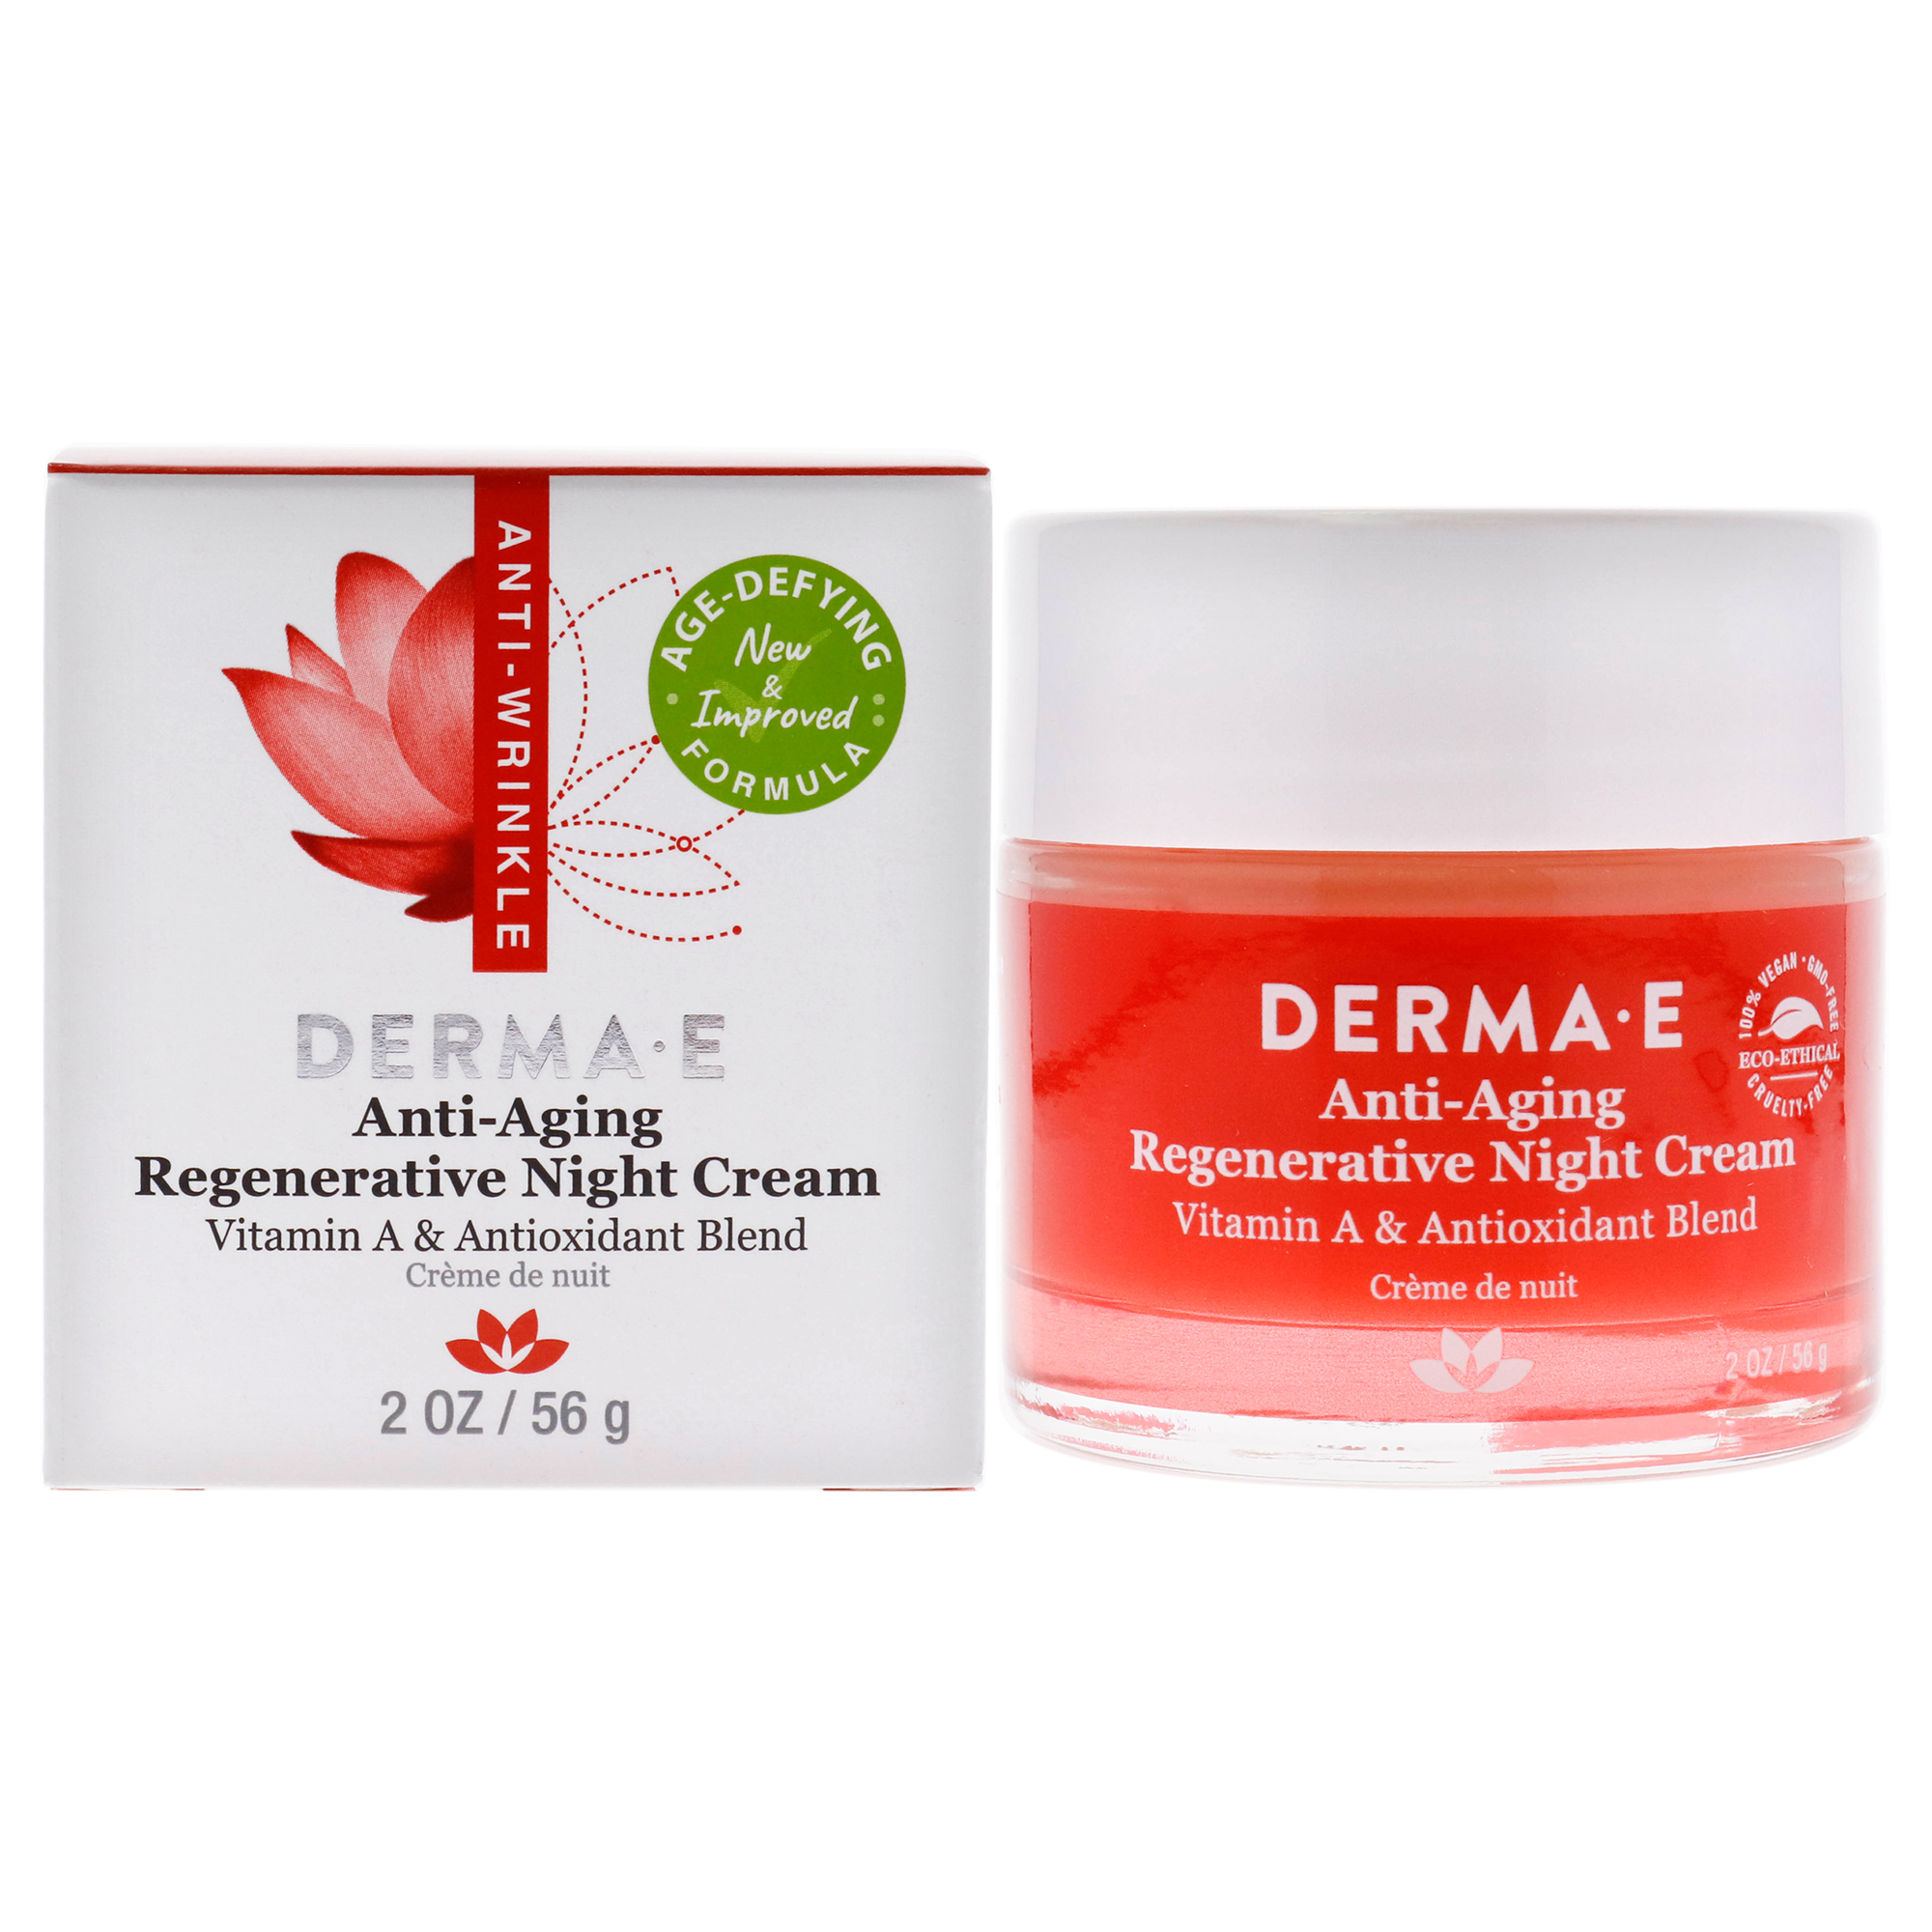 Derma E Anti-Aging Regenerative Night Cream, 2 oz - image 1 of 7